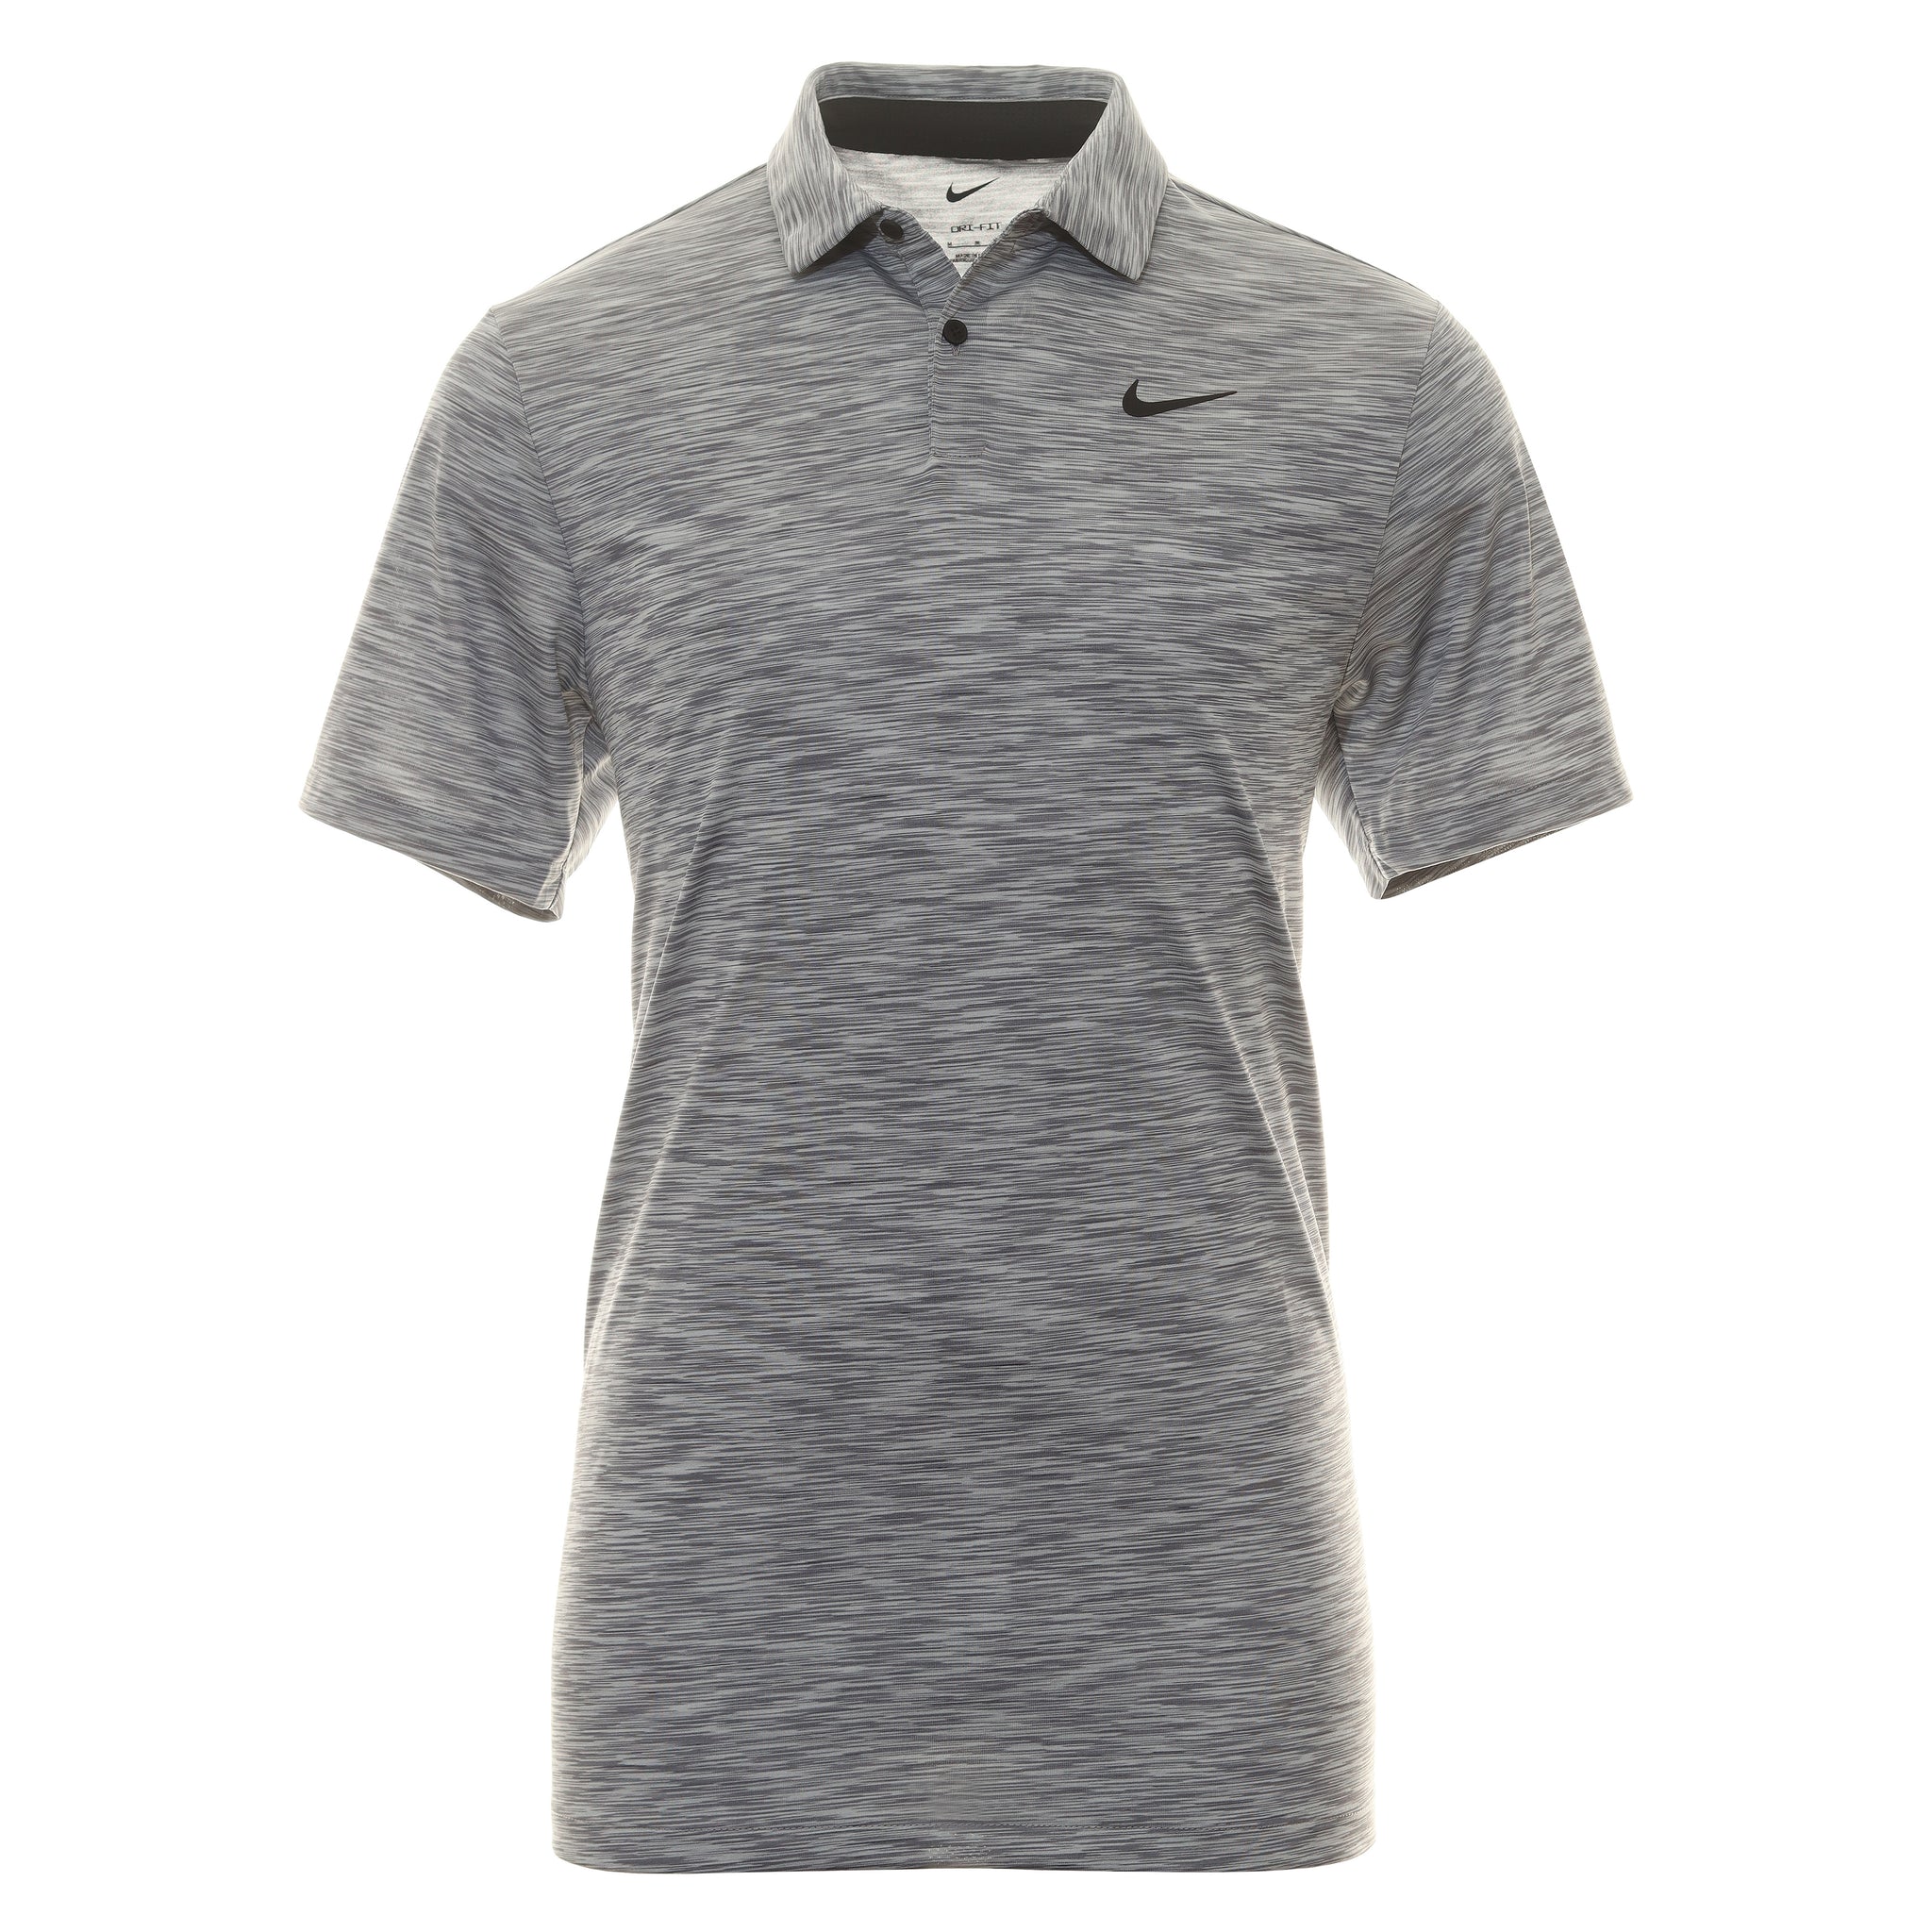 nike-golf-dri-fit-tour-space-dye-shirt-dx6091-smoke-grey-084